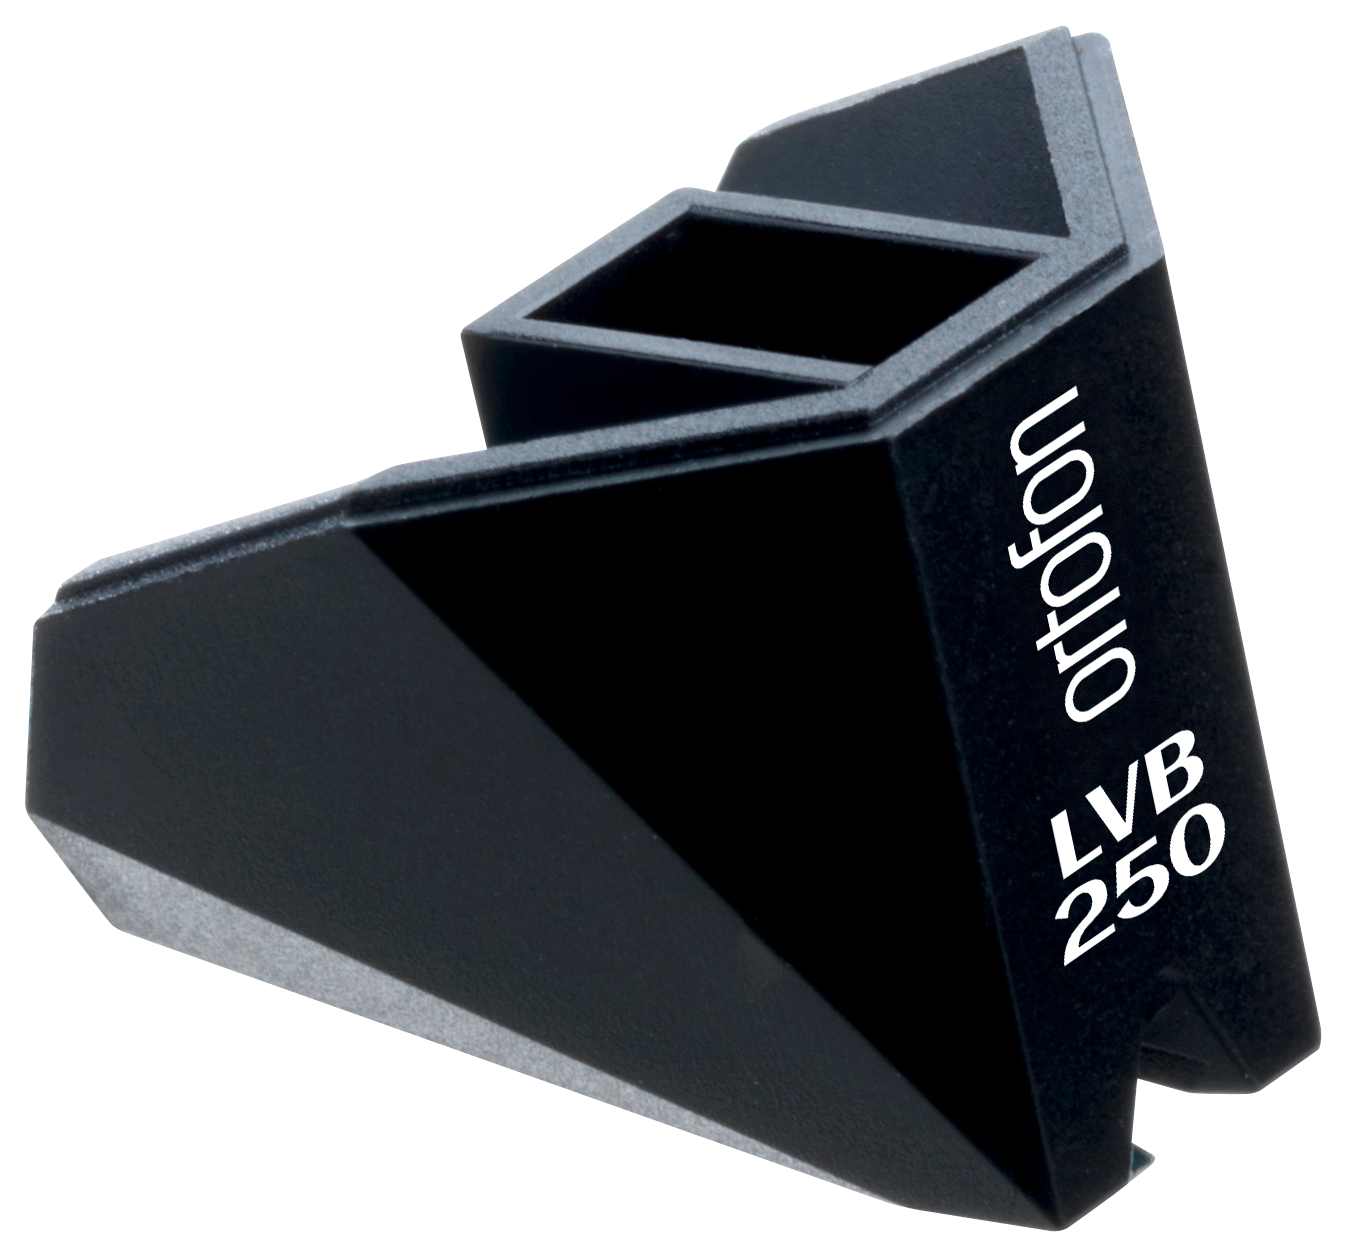 Ortofon Stylus 2M Black LVB 250vervangingsnaald voor 2M Black LVB 250 series elementen